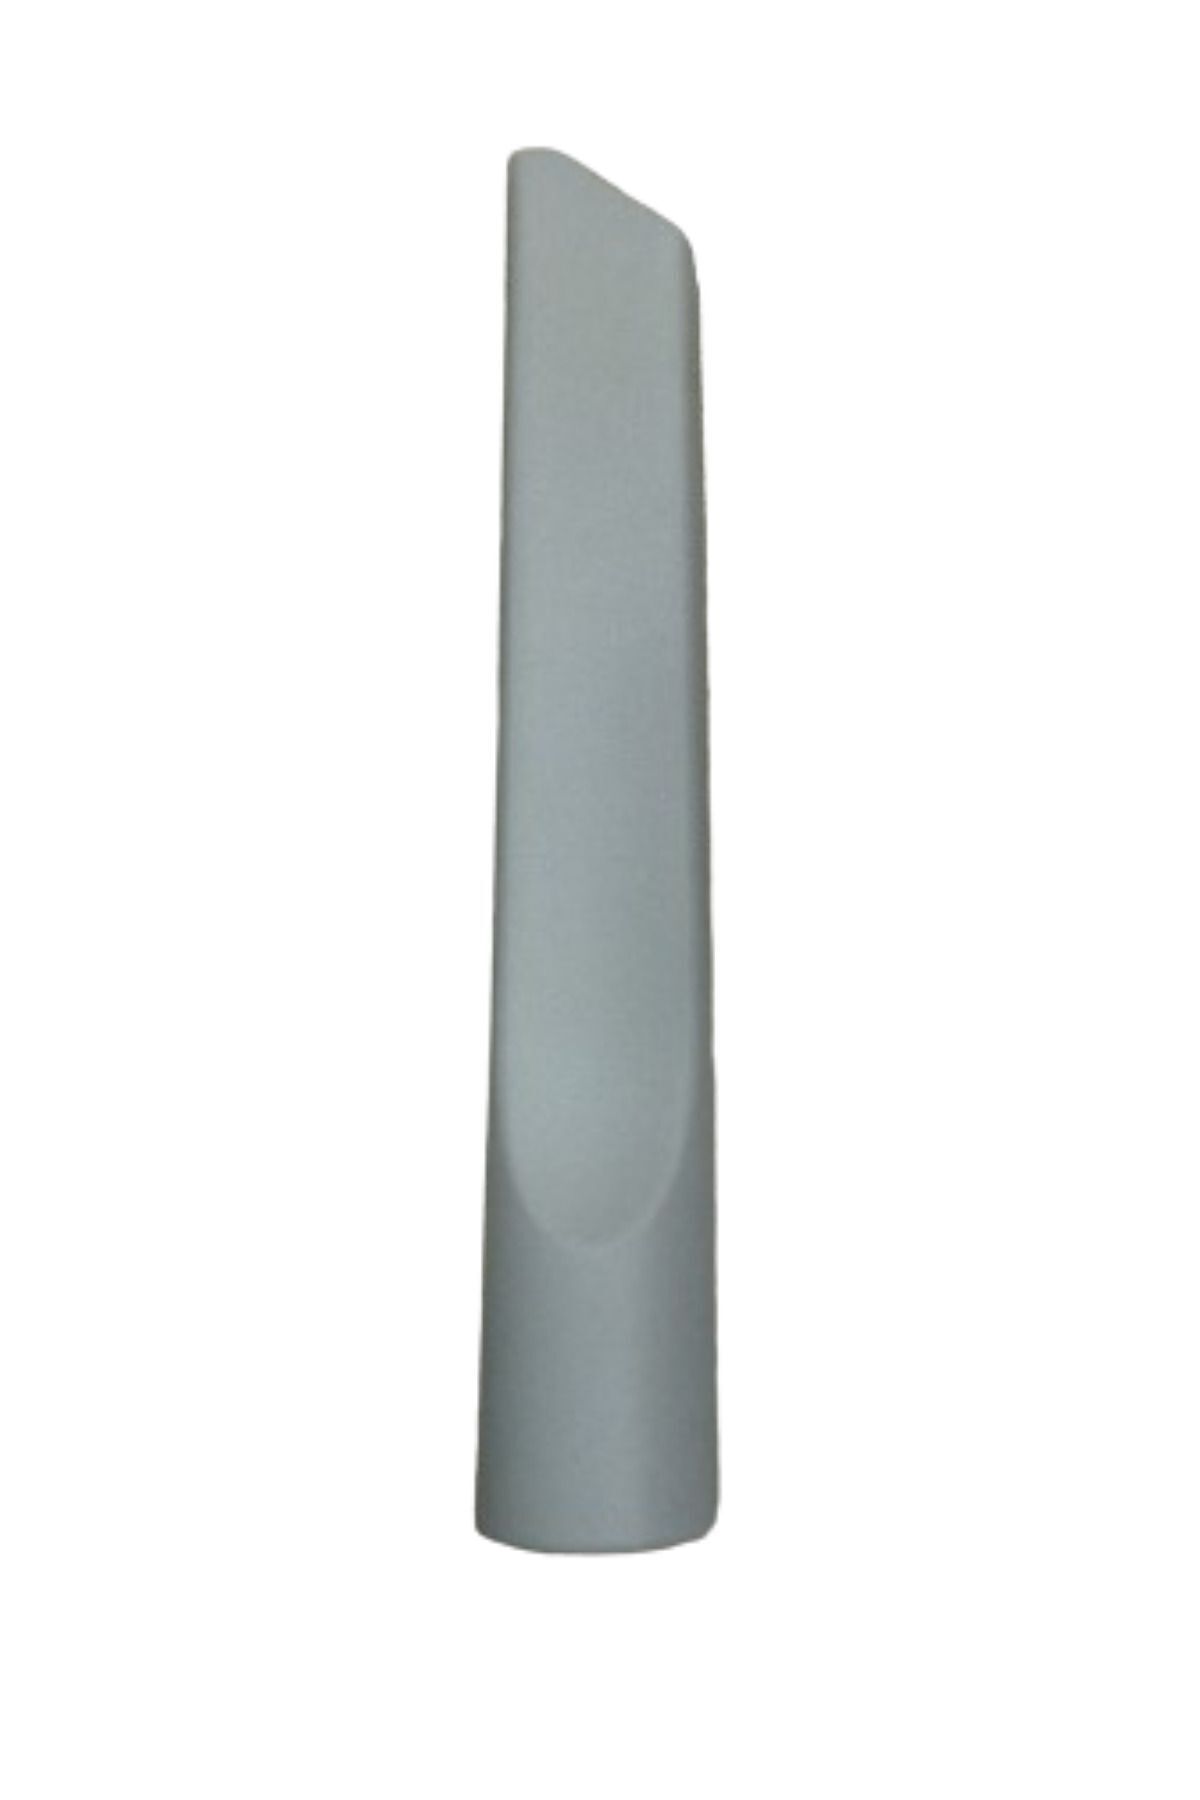 VESTEL Power Max 1800 Süpürge Koltuk Arası Düz Emici Başlık Gri Renk(22,5 cm)